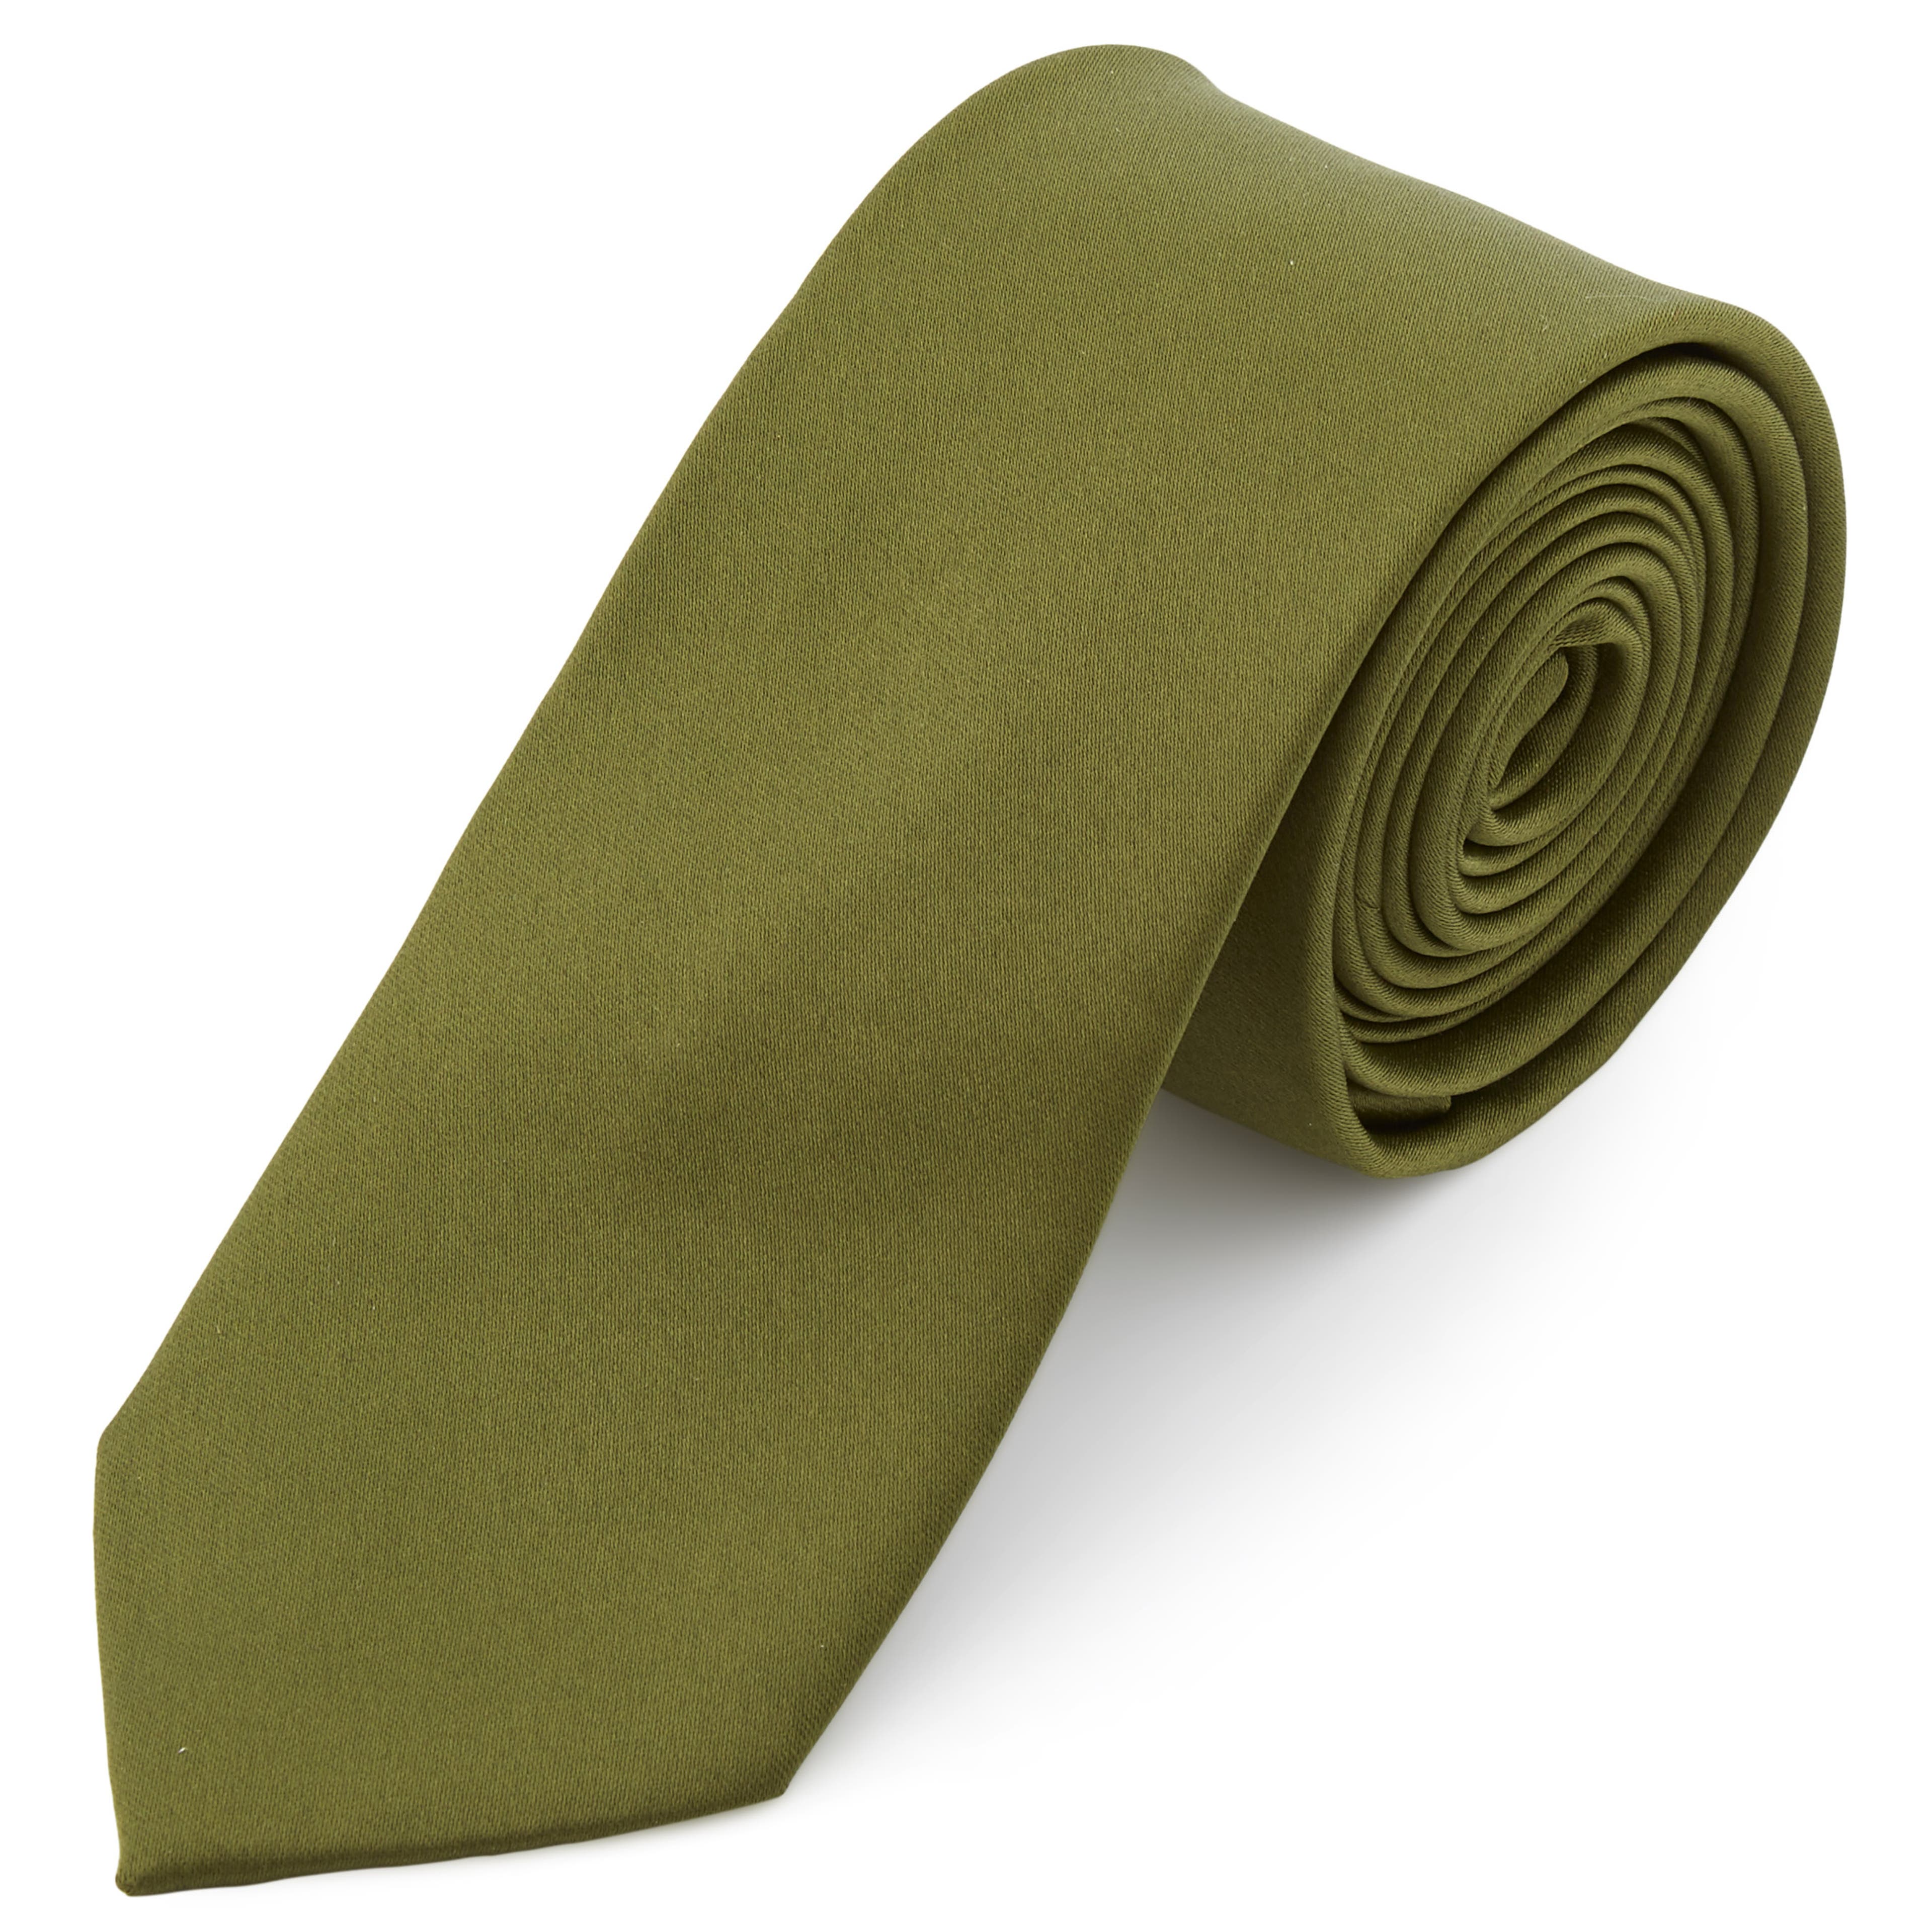 Cravate classique 6 cm vert olive